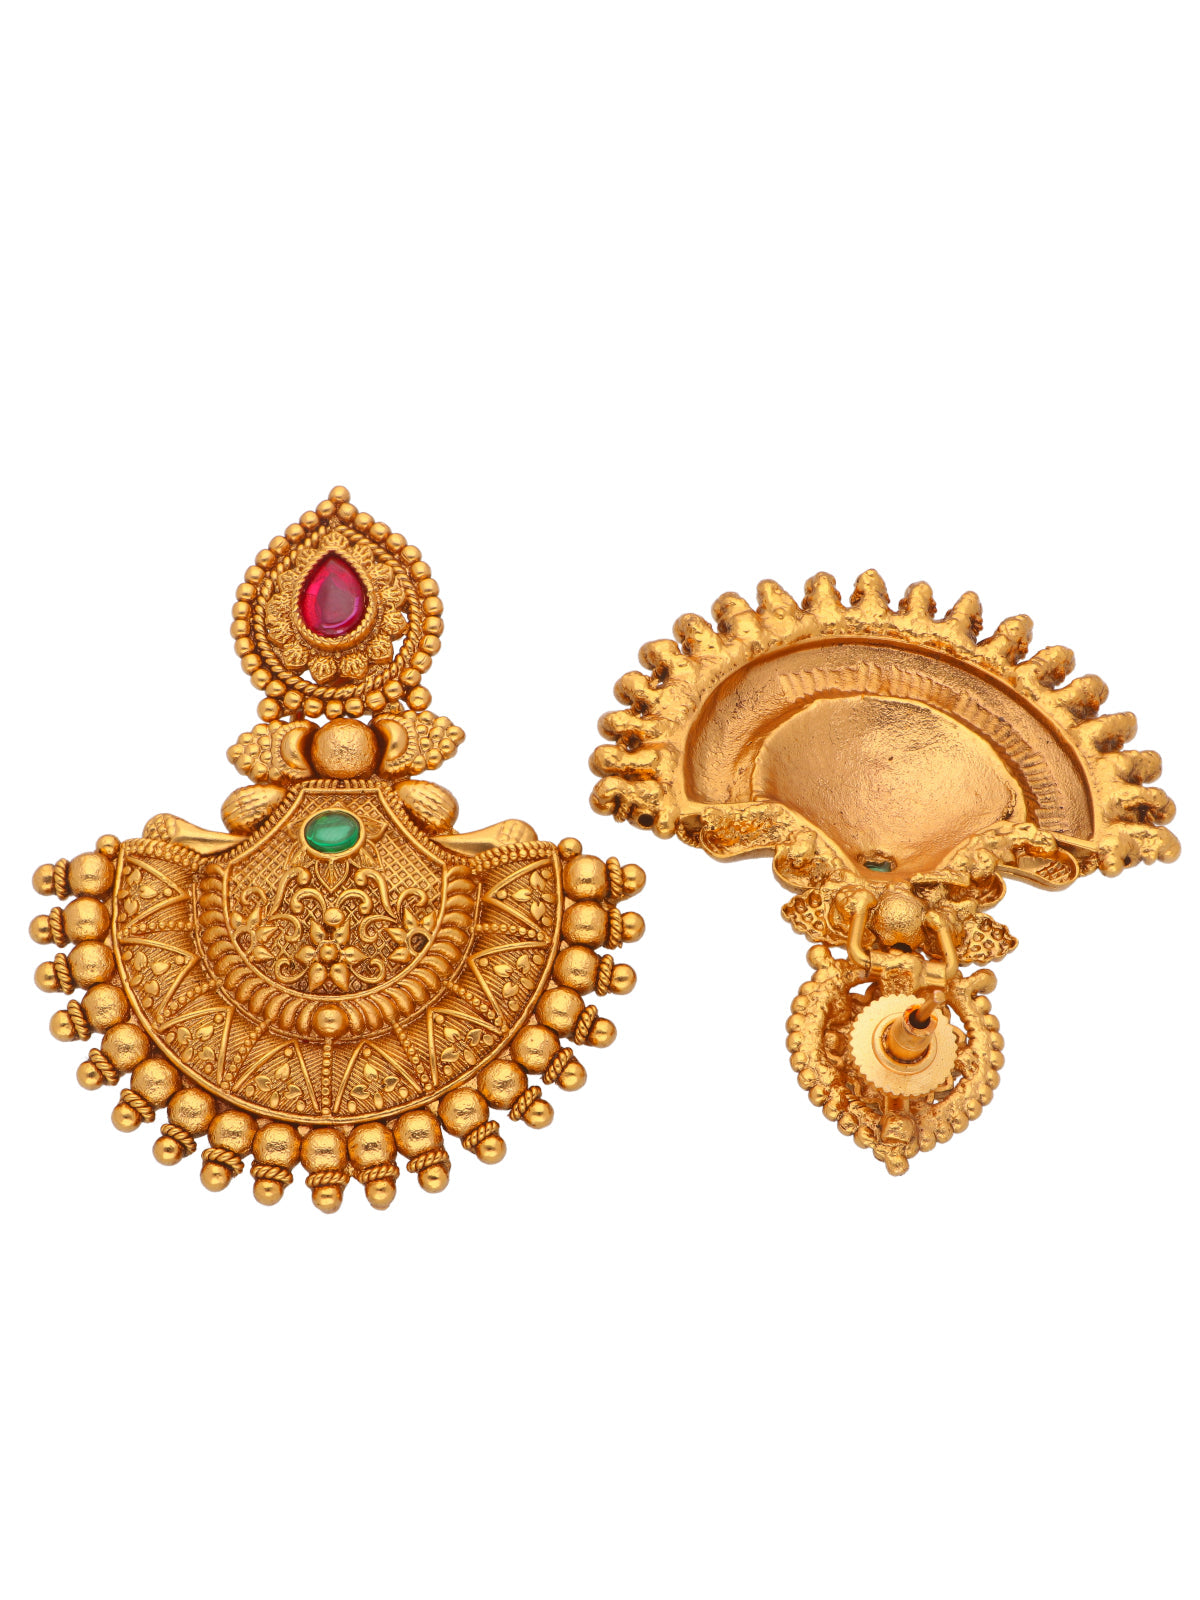 Alankriti on Instagram: “Ruby Red Temple Work Earrings” | Temple jewellery  earrings, Gold jewelry fashion, Jewelry design earrings